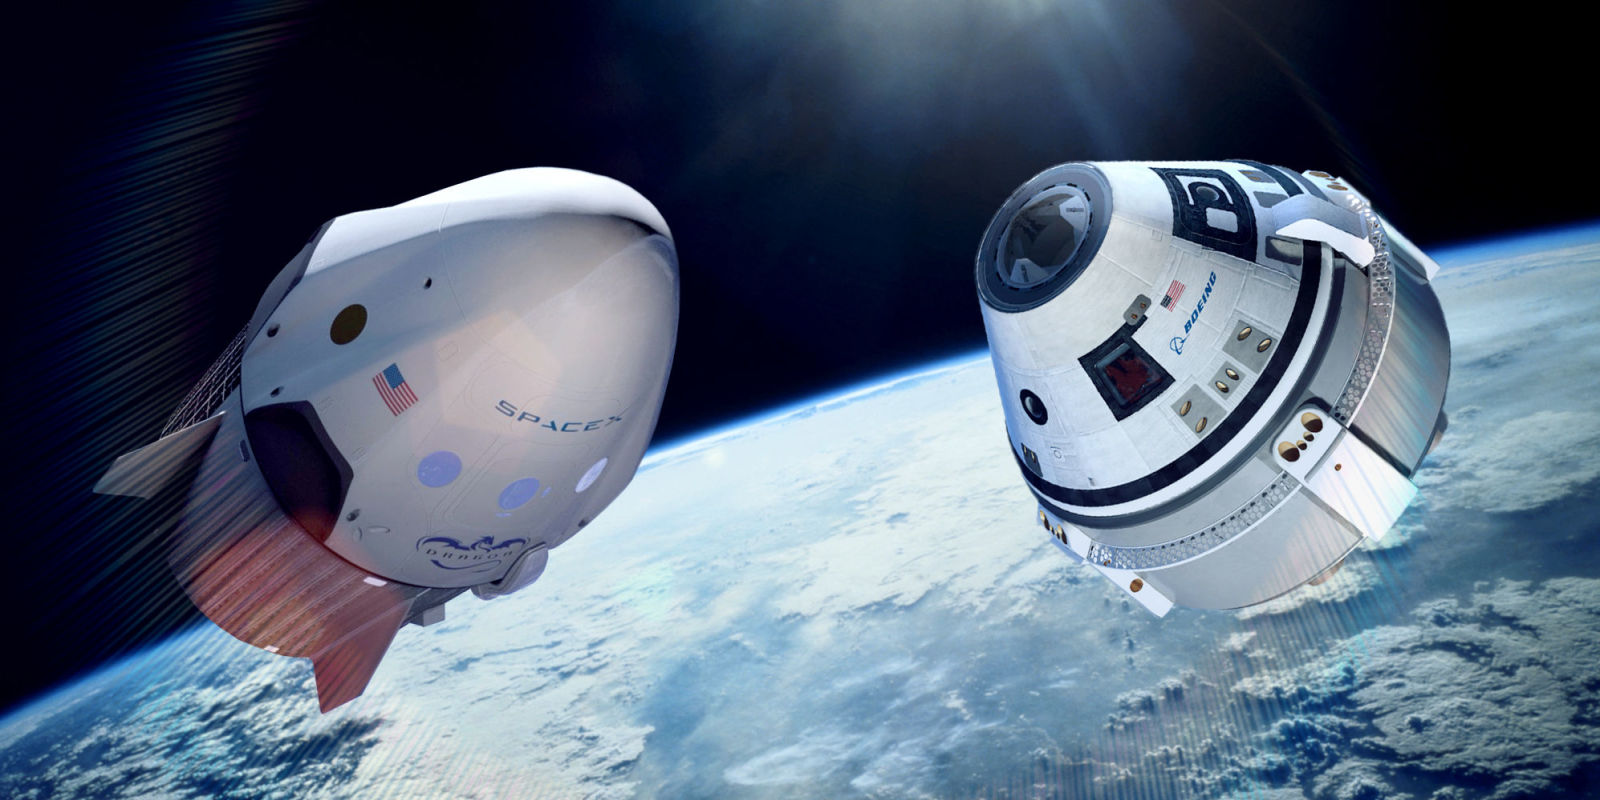 SpaceX ve Boeing, uzaya insan göndermek için birbirleriyle yarışıyor